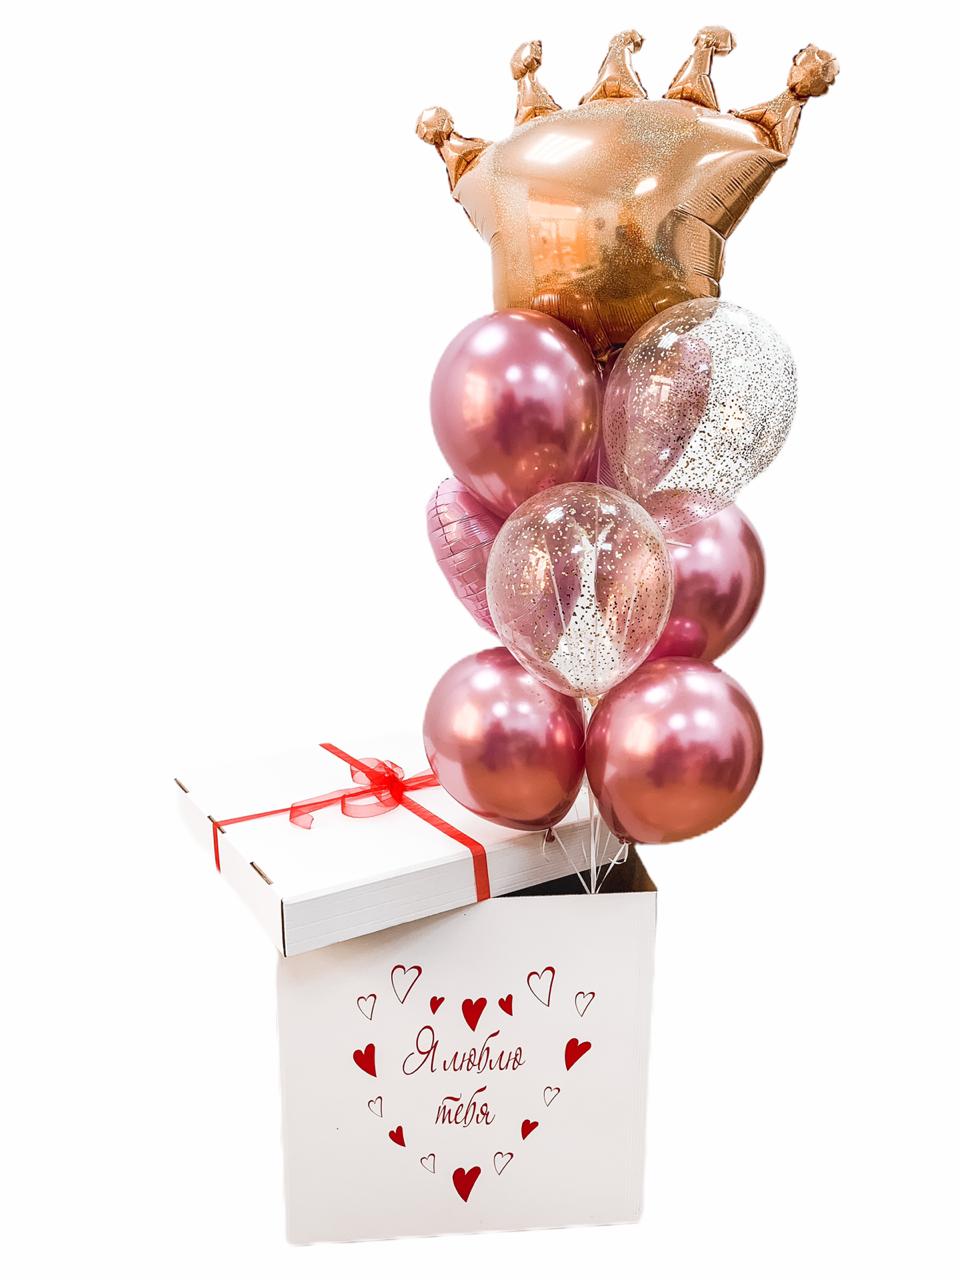 - Декорированная коробка
- 1 Фигура Корона
- 2 Шара с конфетти
- 2 Фольгированных сердца 45см
- 4 Шара Хром
- Утяжелитель